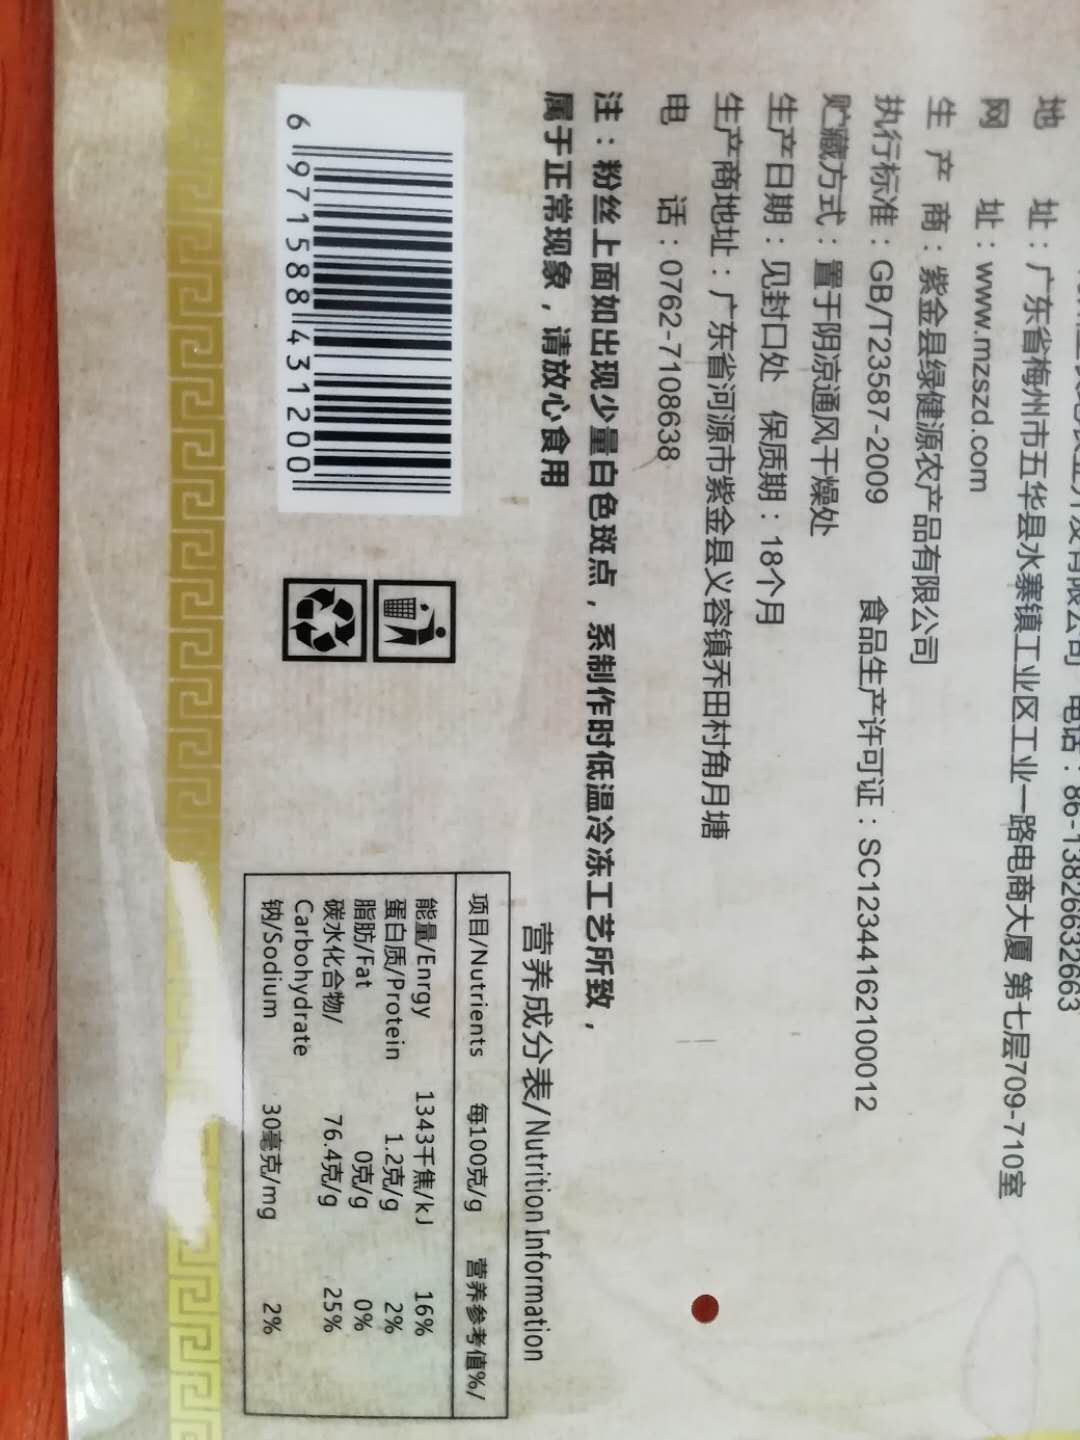 【广东扶贫商品】五华高山红薯粉丝250克袋装传统工艺制作无添加口感Q弹客家特产